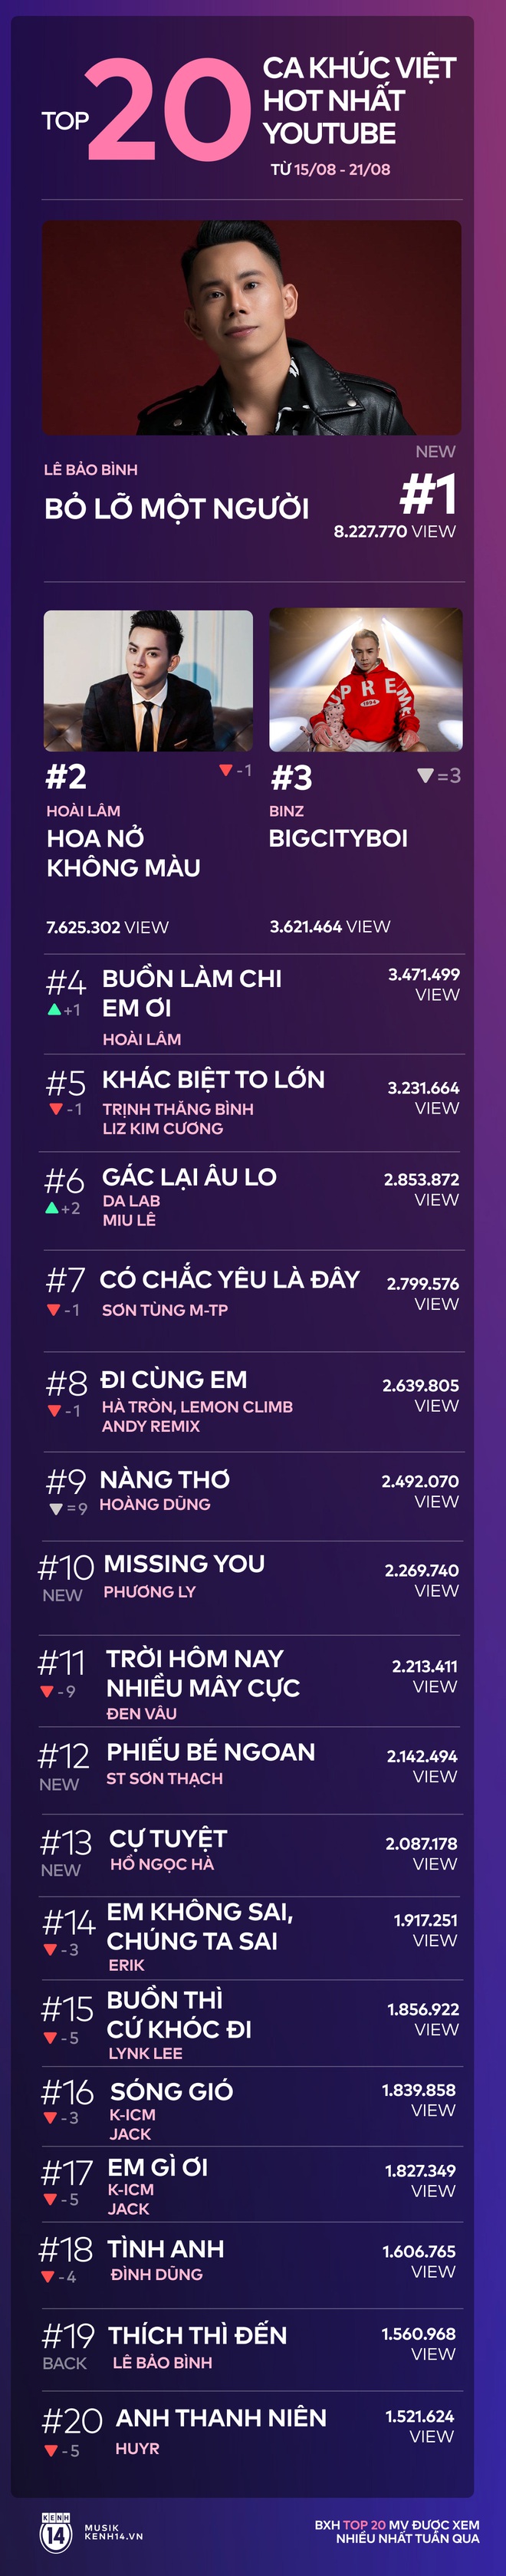 20 ca khúc Việt hot nhất tuần: Hoài Lâm mất ngôi vương vào tay người mới sau 4 tuần trụ vững, Phương Ly vừa comeback đã giành vị trí cao - Ảnh 18.